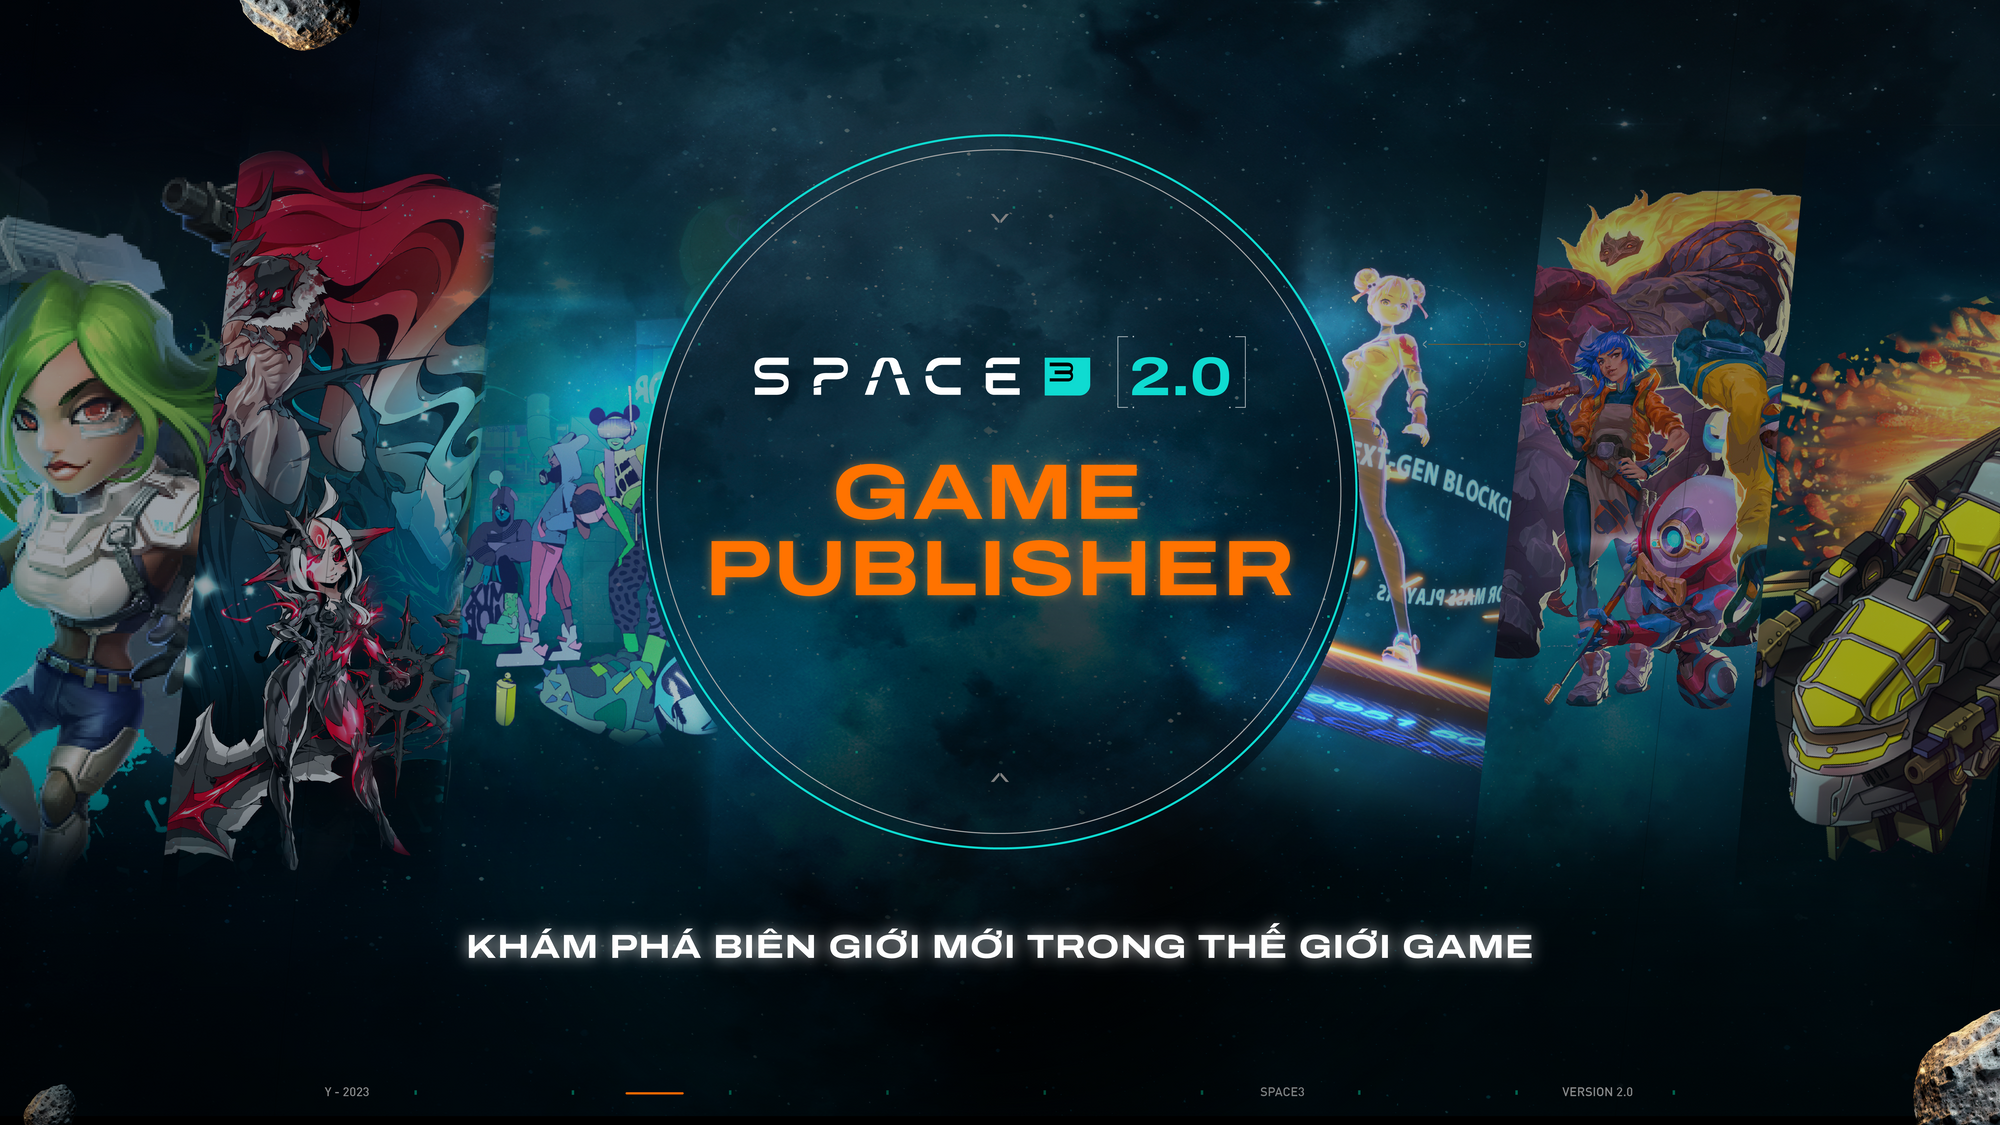 Space3 2.0: Khám phá biên giới mới trong thế giới game